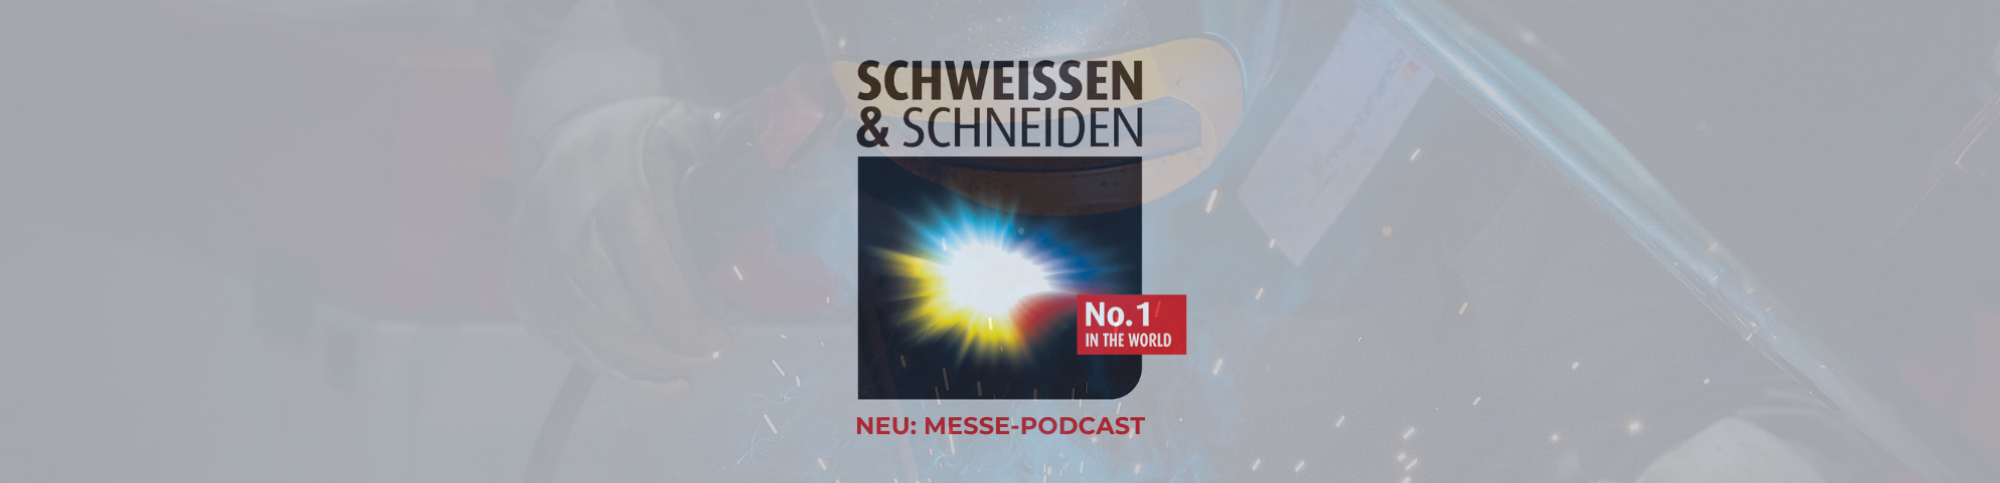 SCHWEISSEN & SCHNEIDEN: 
		SuS_Header_Podcast_DE
	